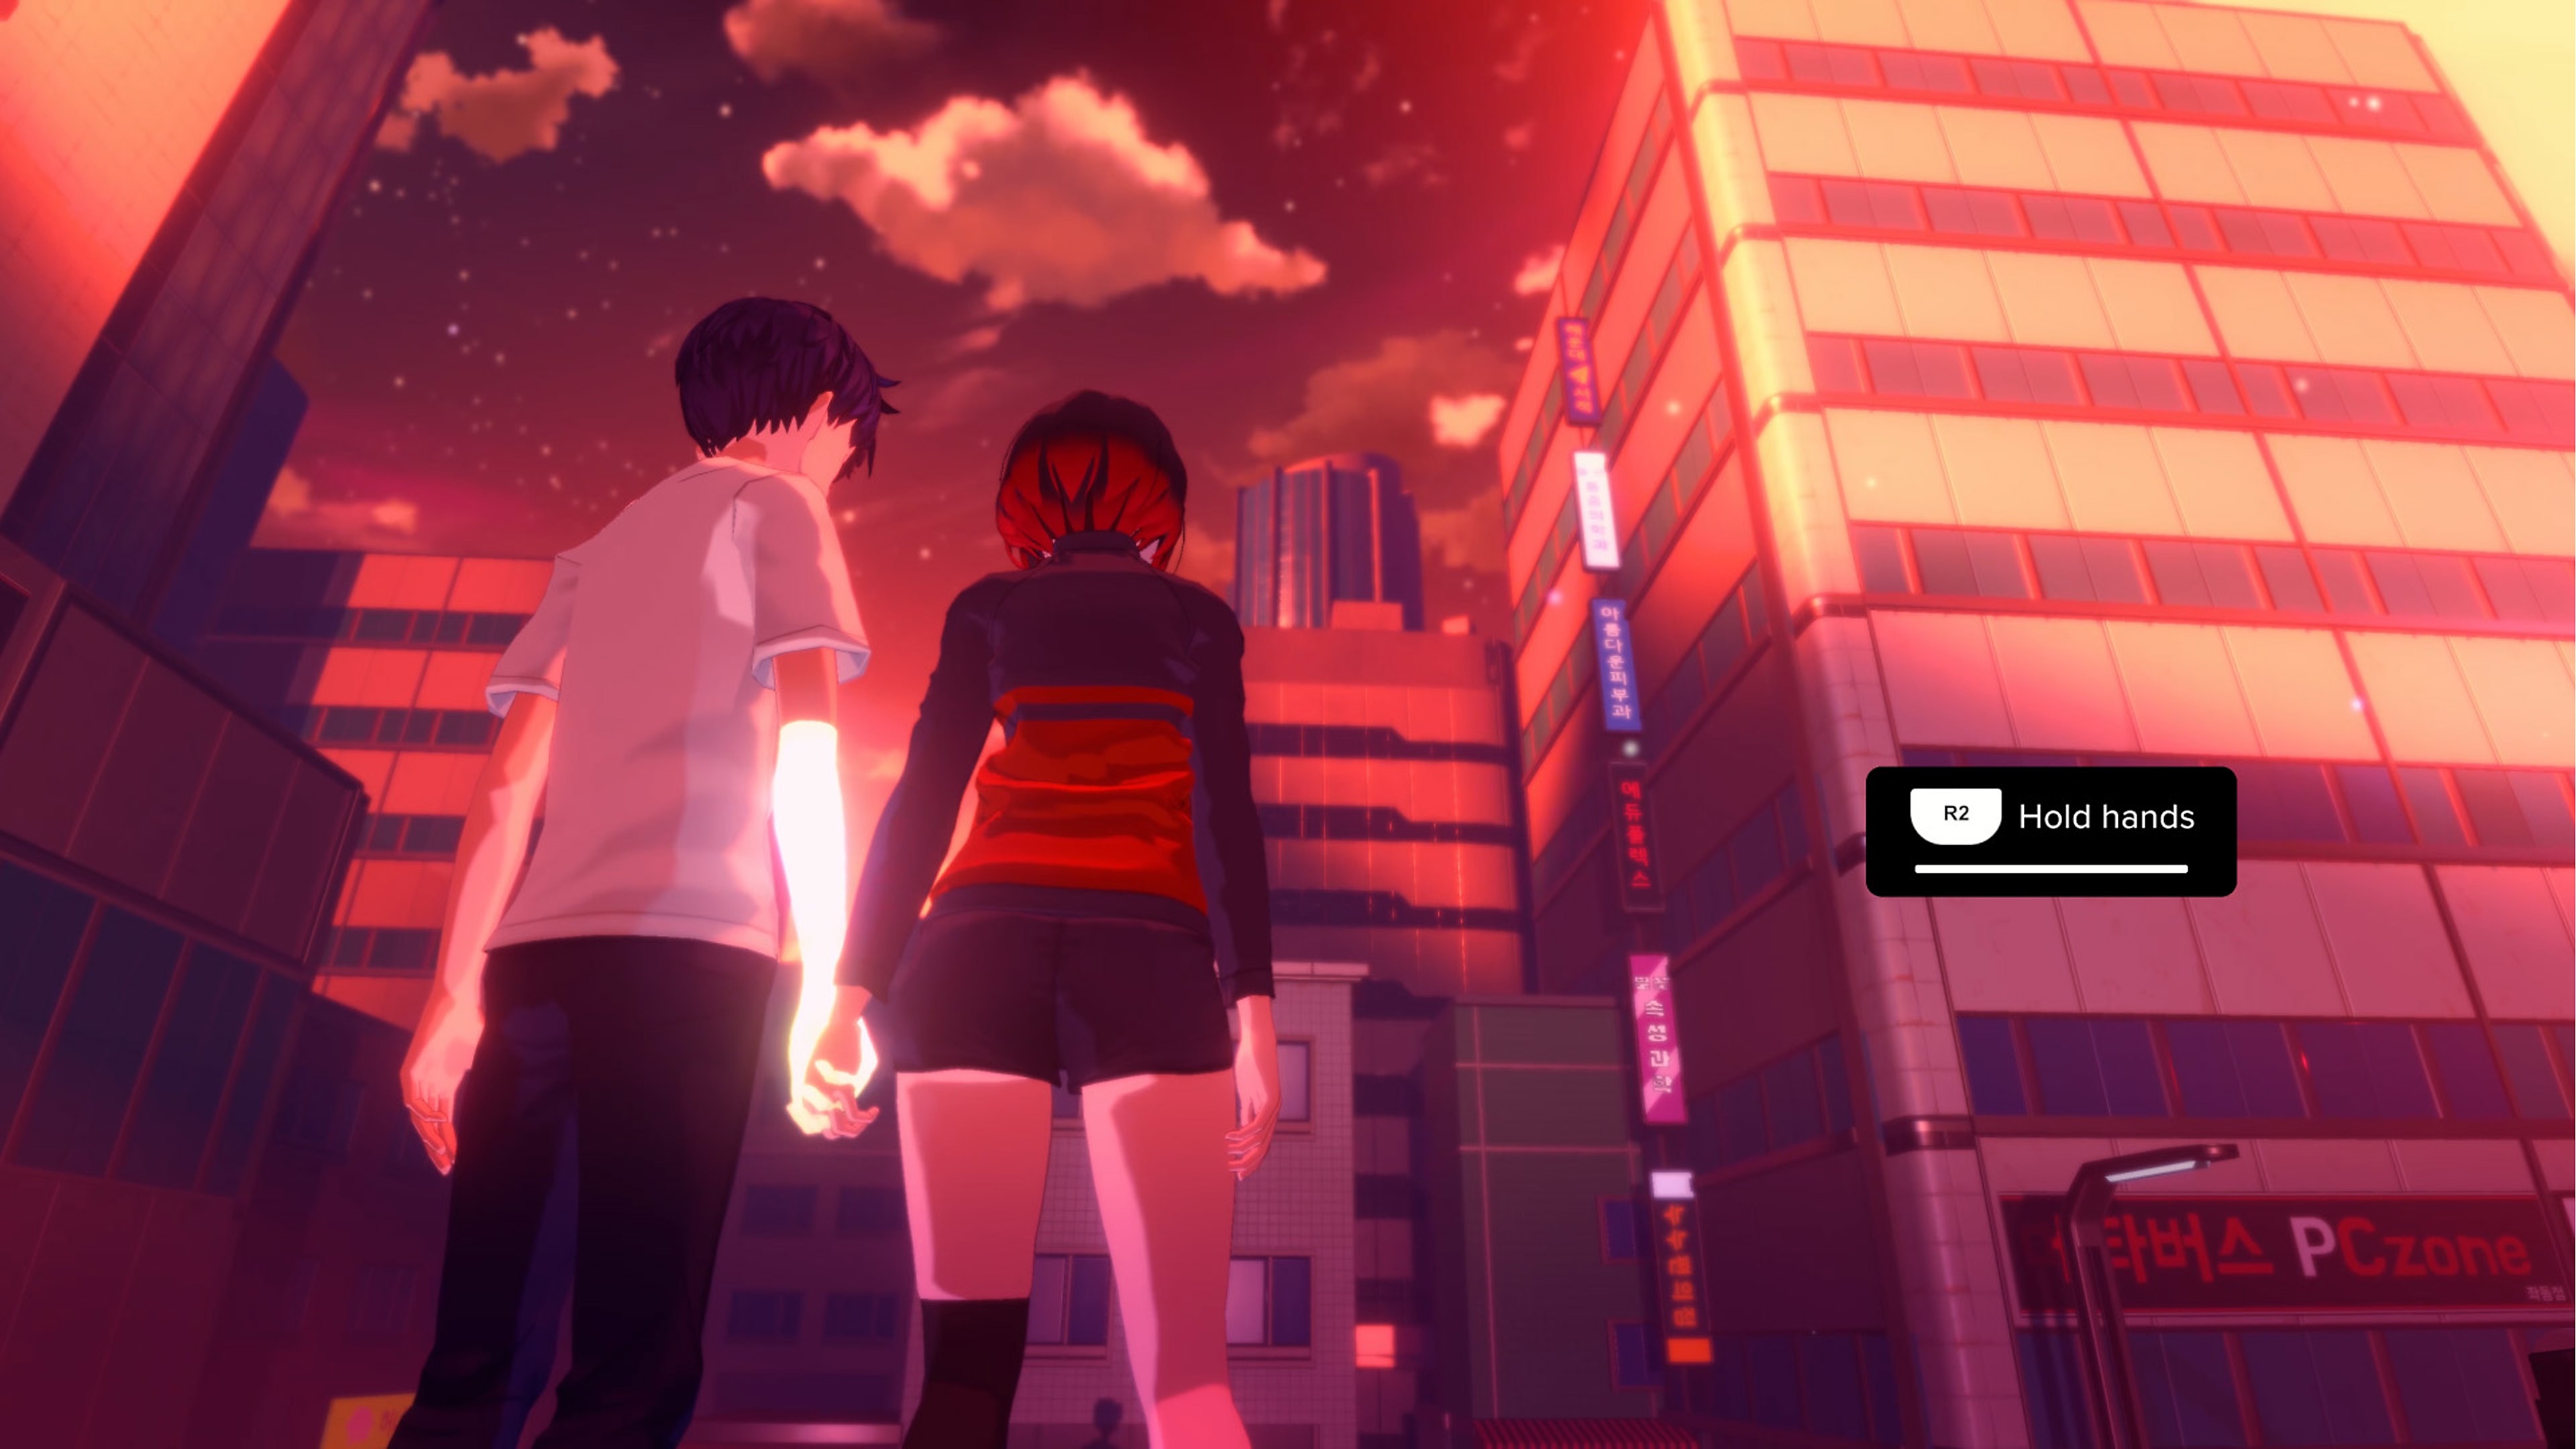 Eternights – skjermbilde av to karakterer i highschool-alder som leier hverandre foran et høyhus i byen.